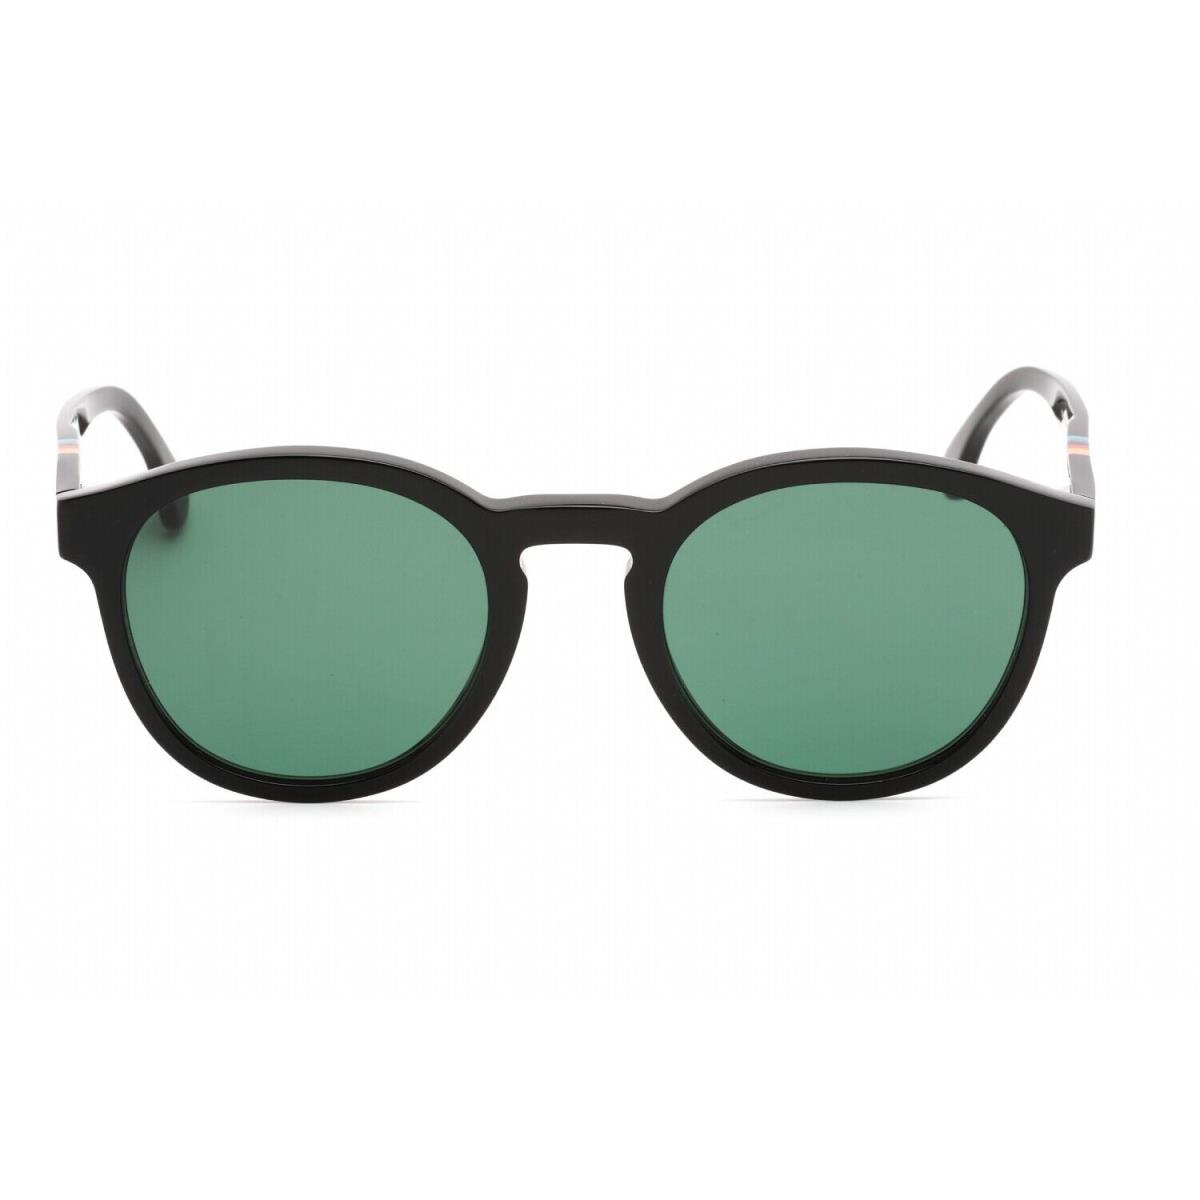 Paul Smith PSSN05652 Deeley 001 Sunglasses Black Frame Green Lenses 52mm - Frame: Black, Lens: Green